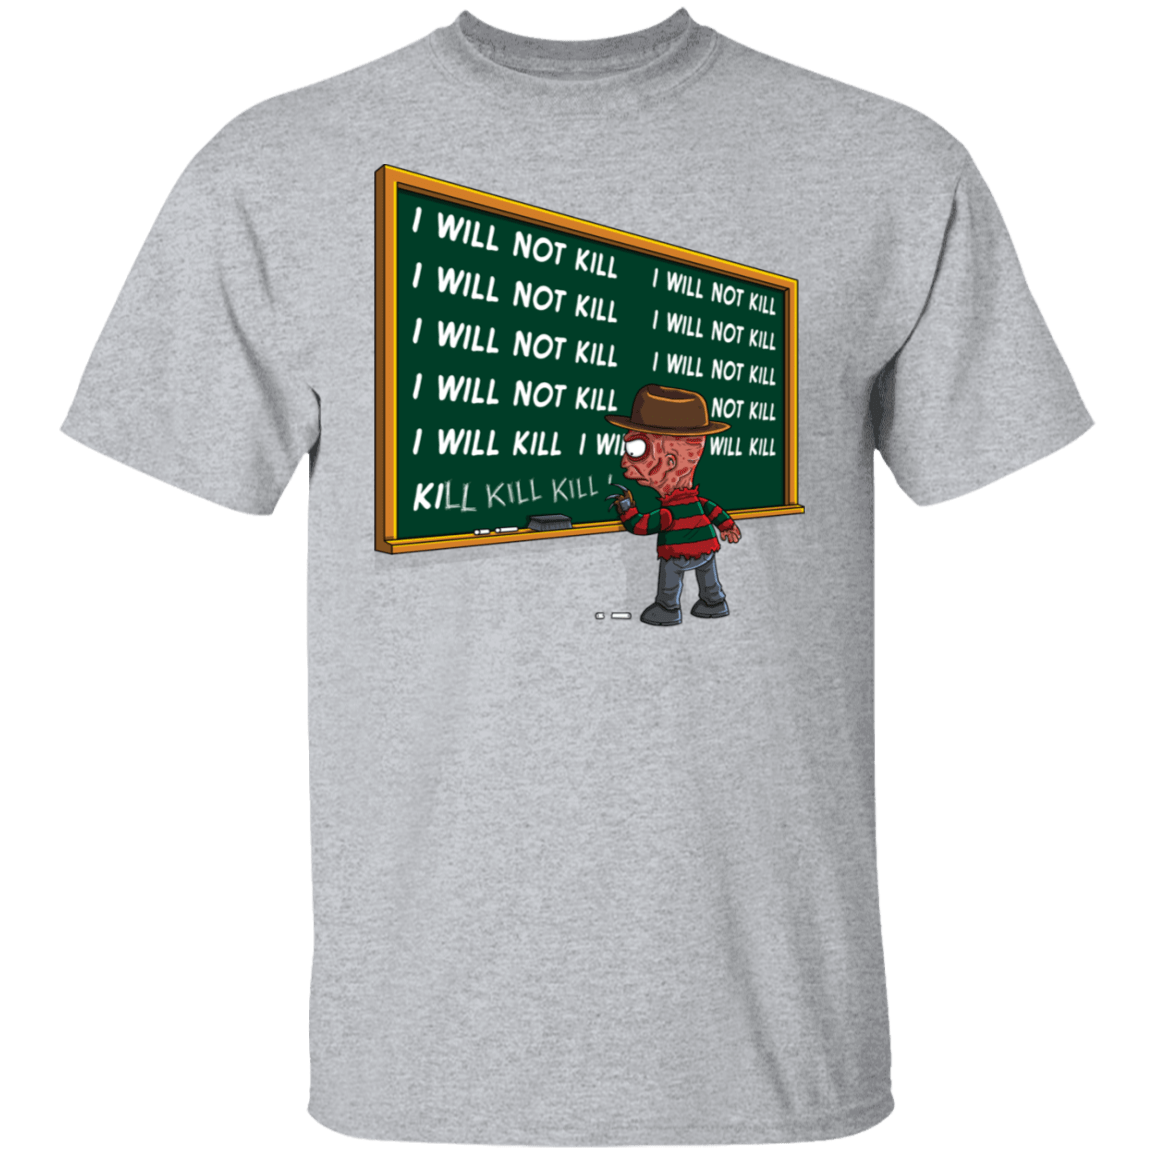 T-Shirts Sport Grey / S Kill Kill Kill Freddy T-Shirt